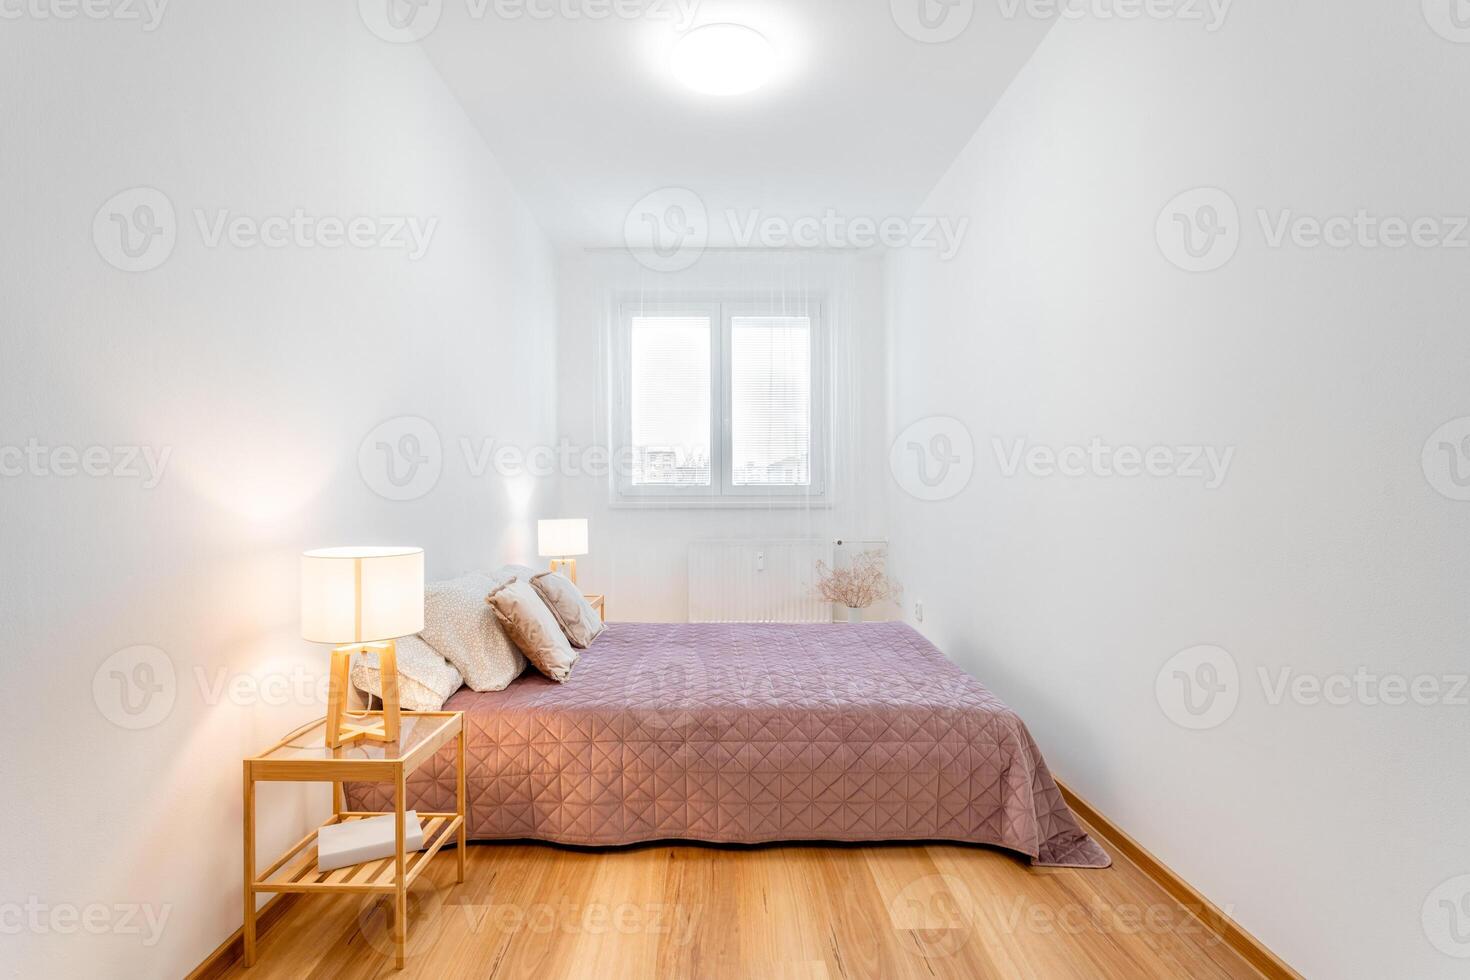 acolhedor moderno quarto interior com natural luz foto